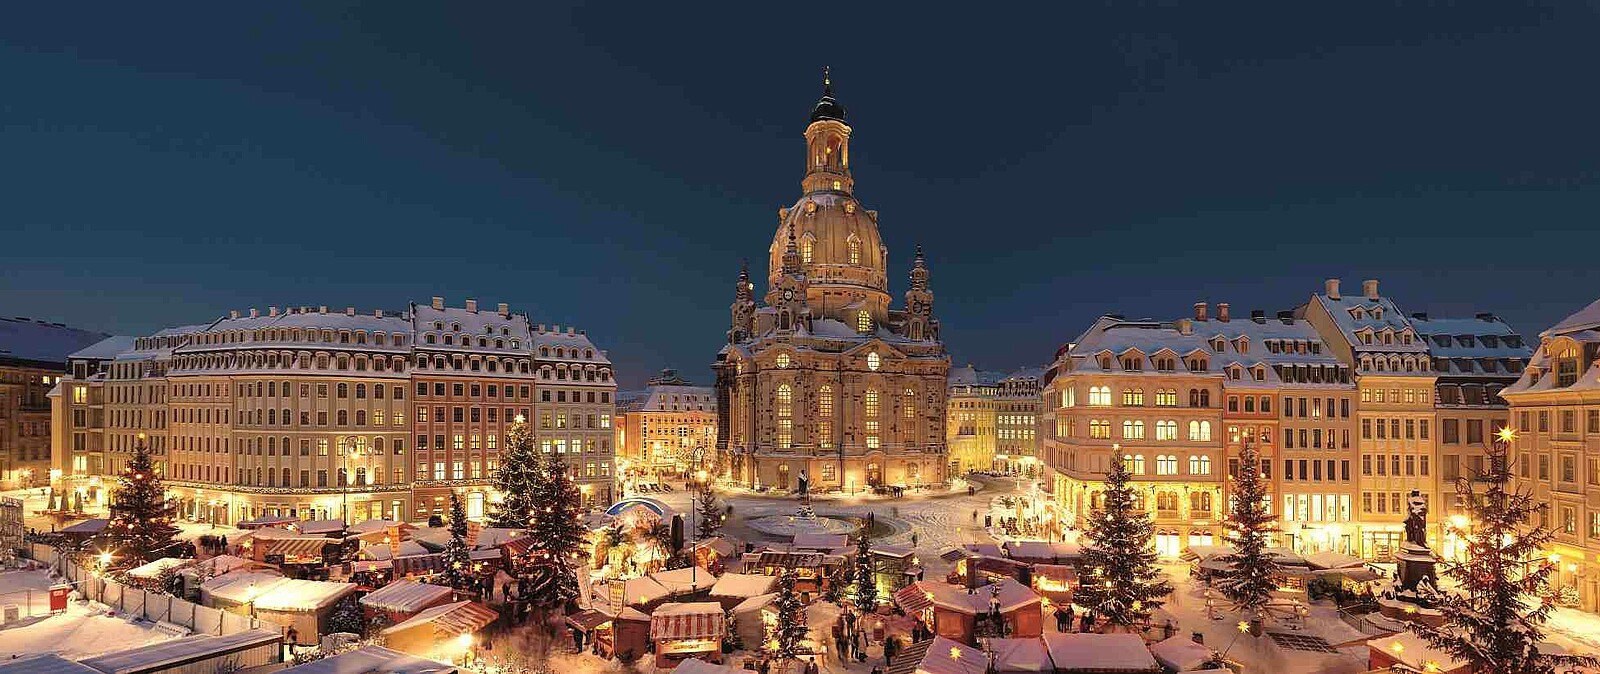 Zur schönen Adventszeit verwandelt sich Dresden in eine Weihnachtsstadt